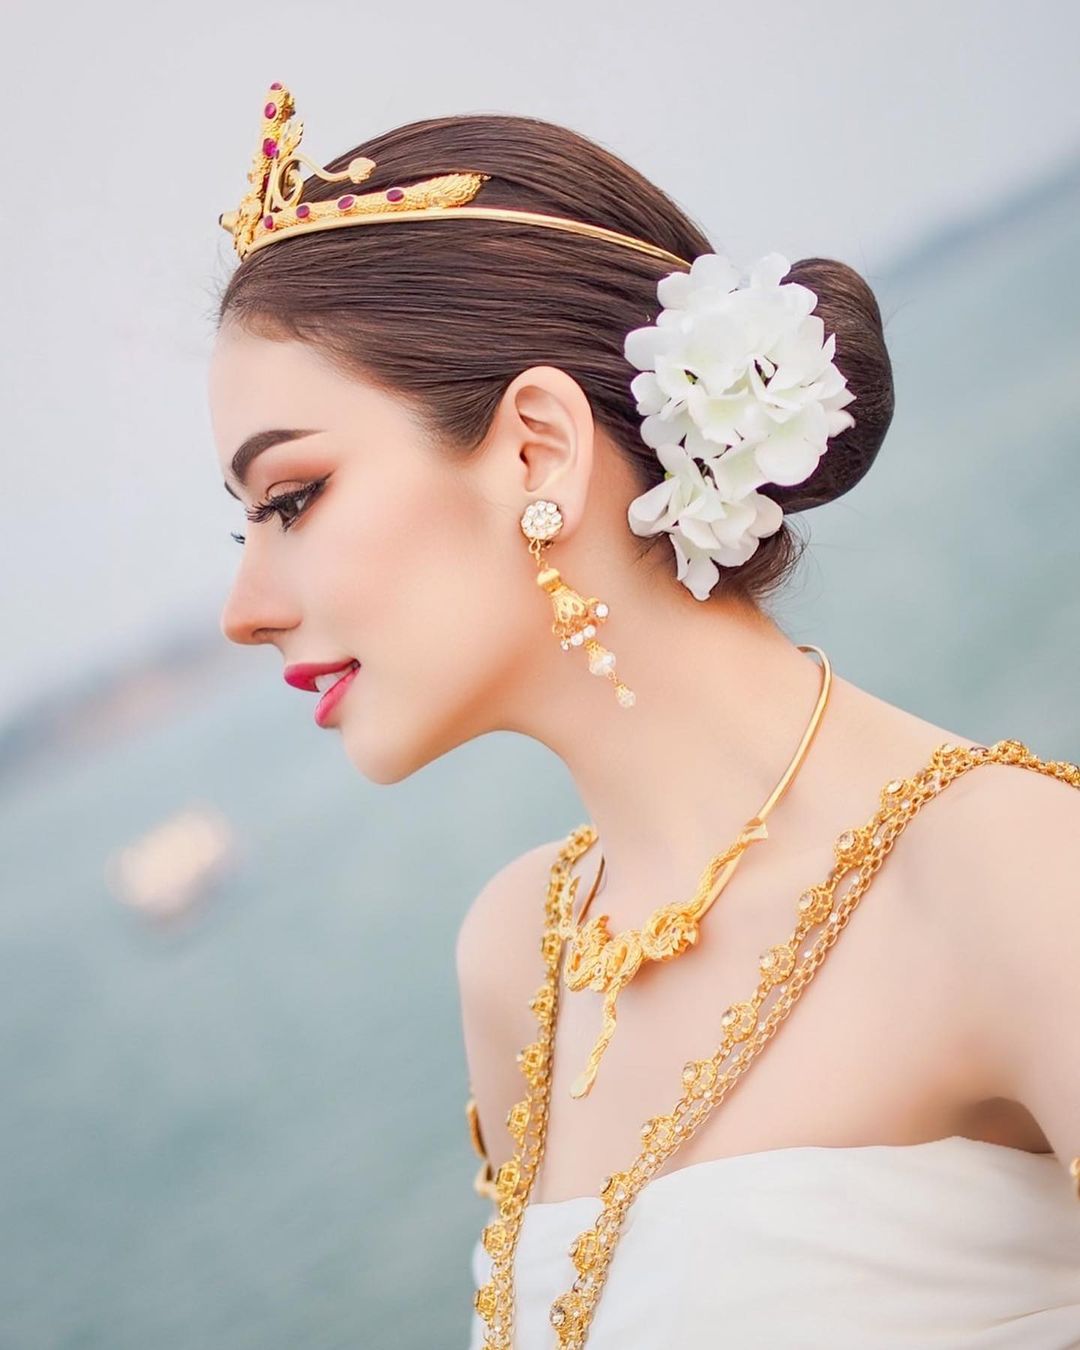 Pailiuus Prajakrattanaku là người đẹp lai Thái - Việt vừa đăng quang&nbsp;Miss Grand Nakhon Phanom.